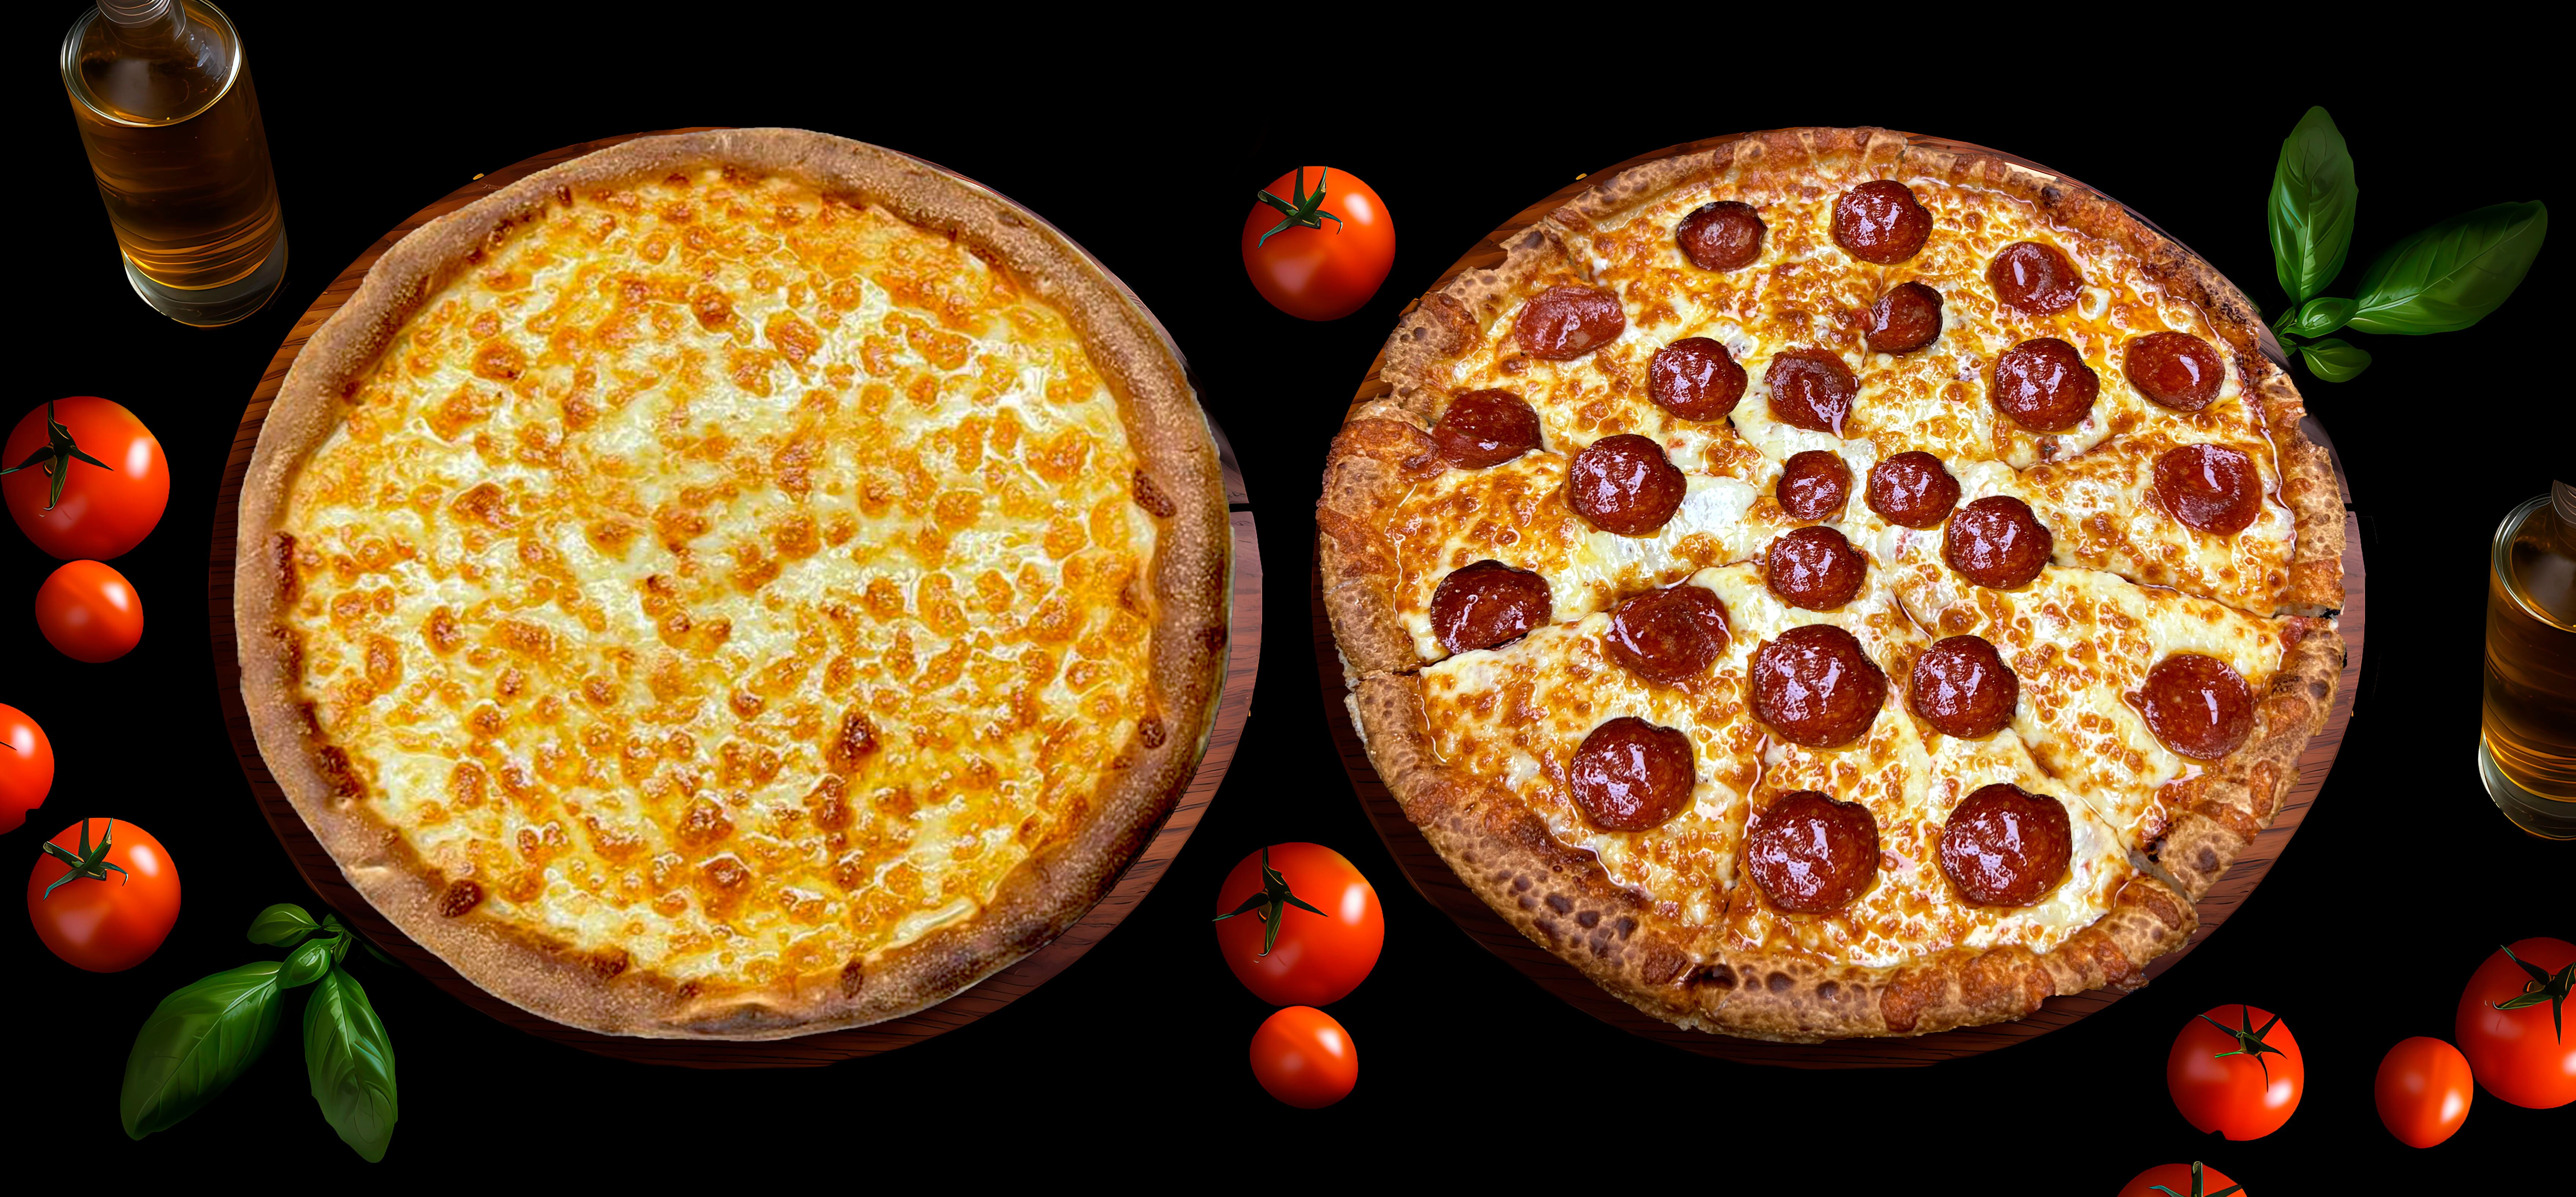 Pizza Perfecto - Taunton, MA